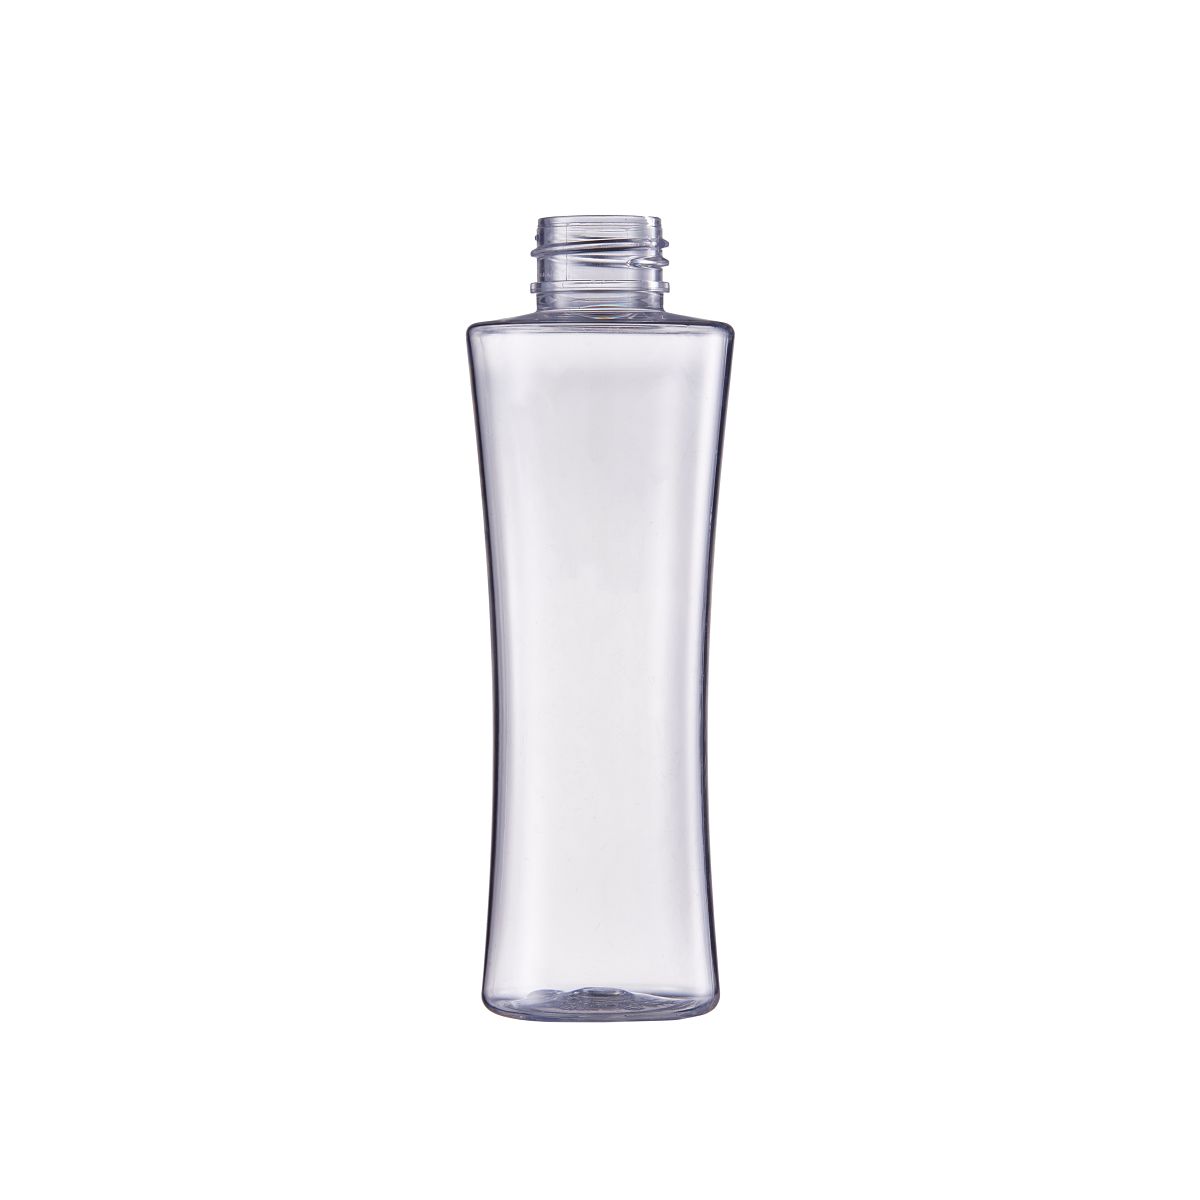 Fragrance Spray Bottle